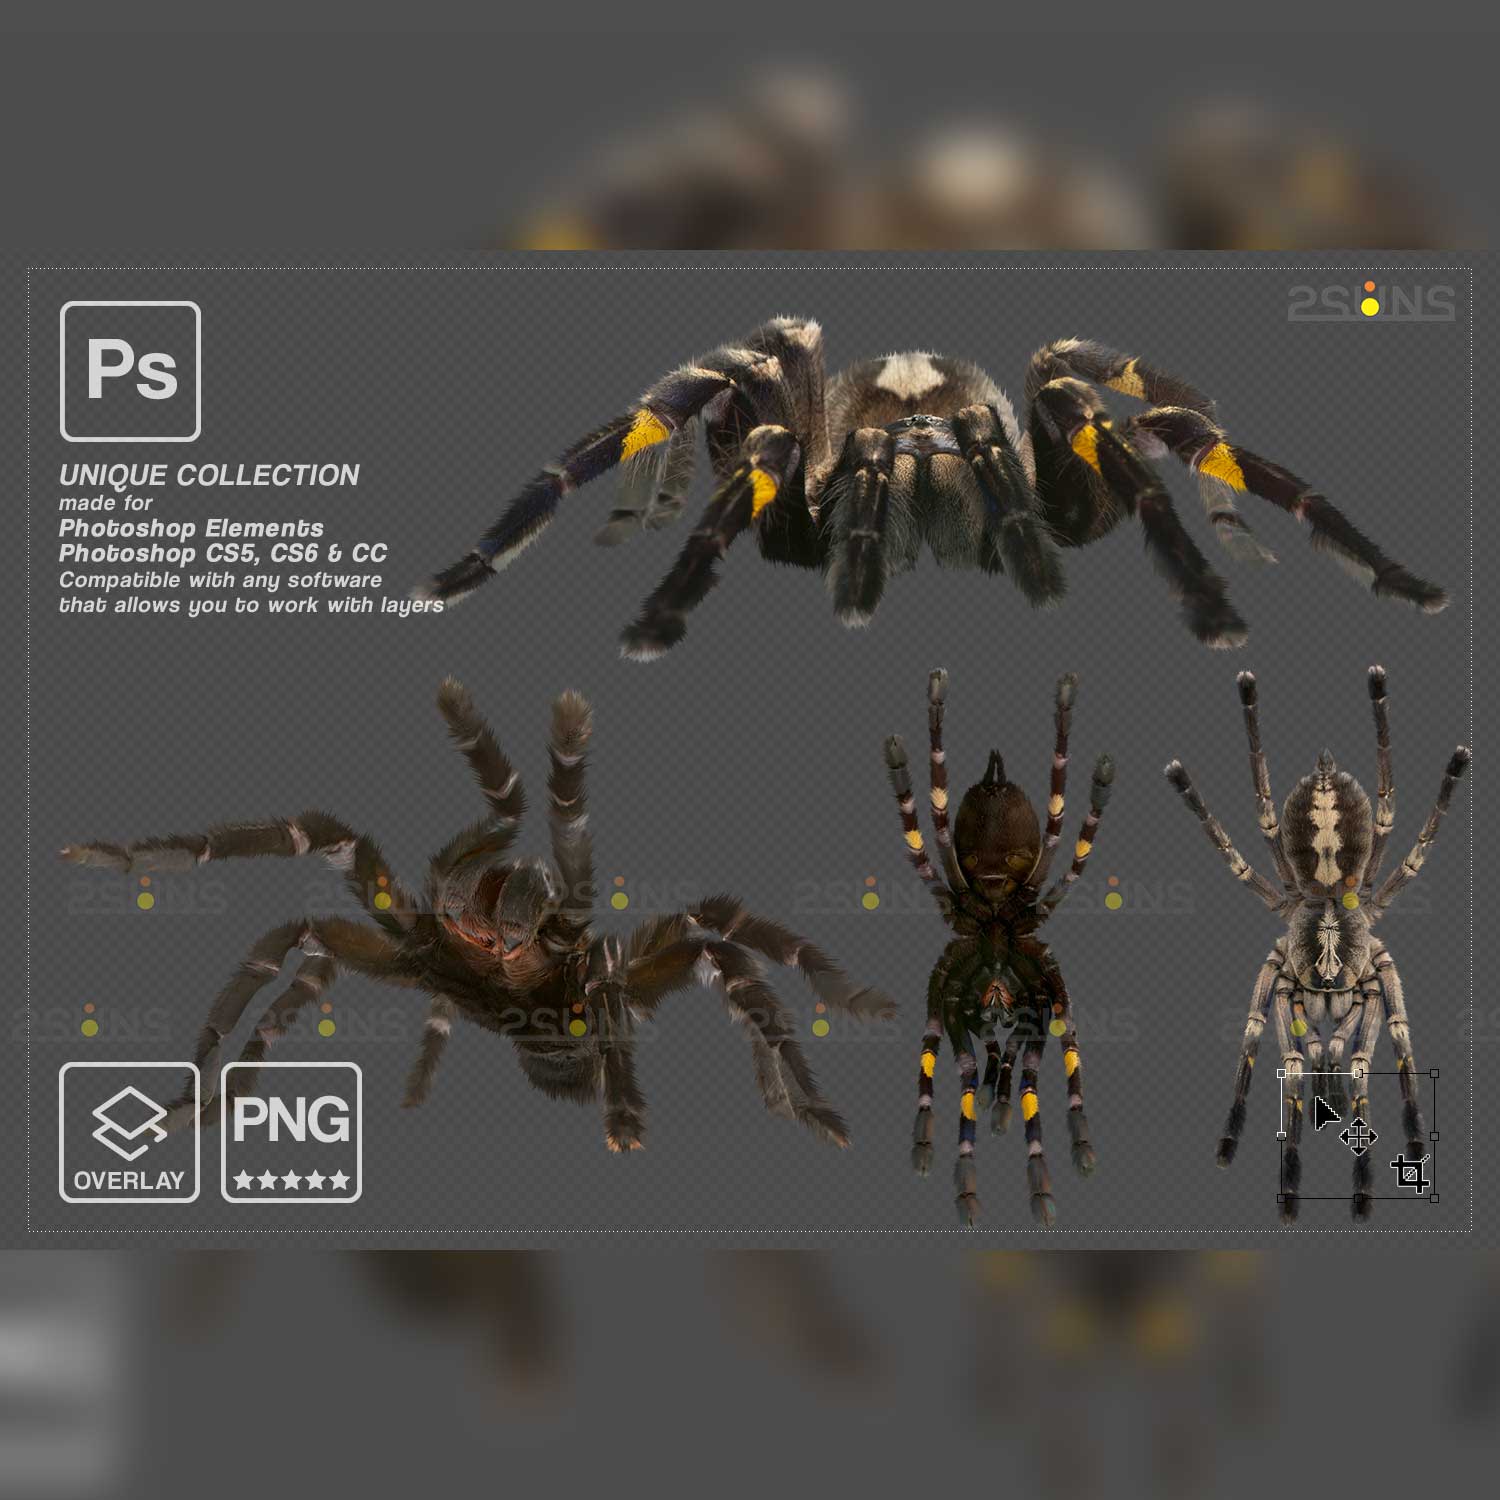 Spider Photoshop Overlays.